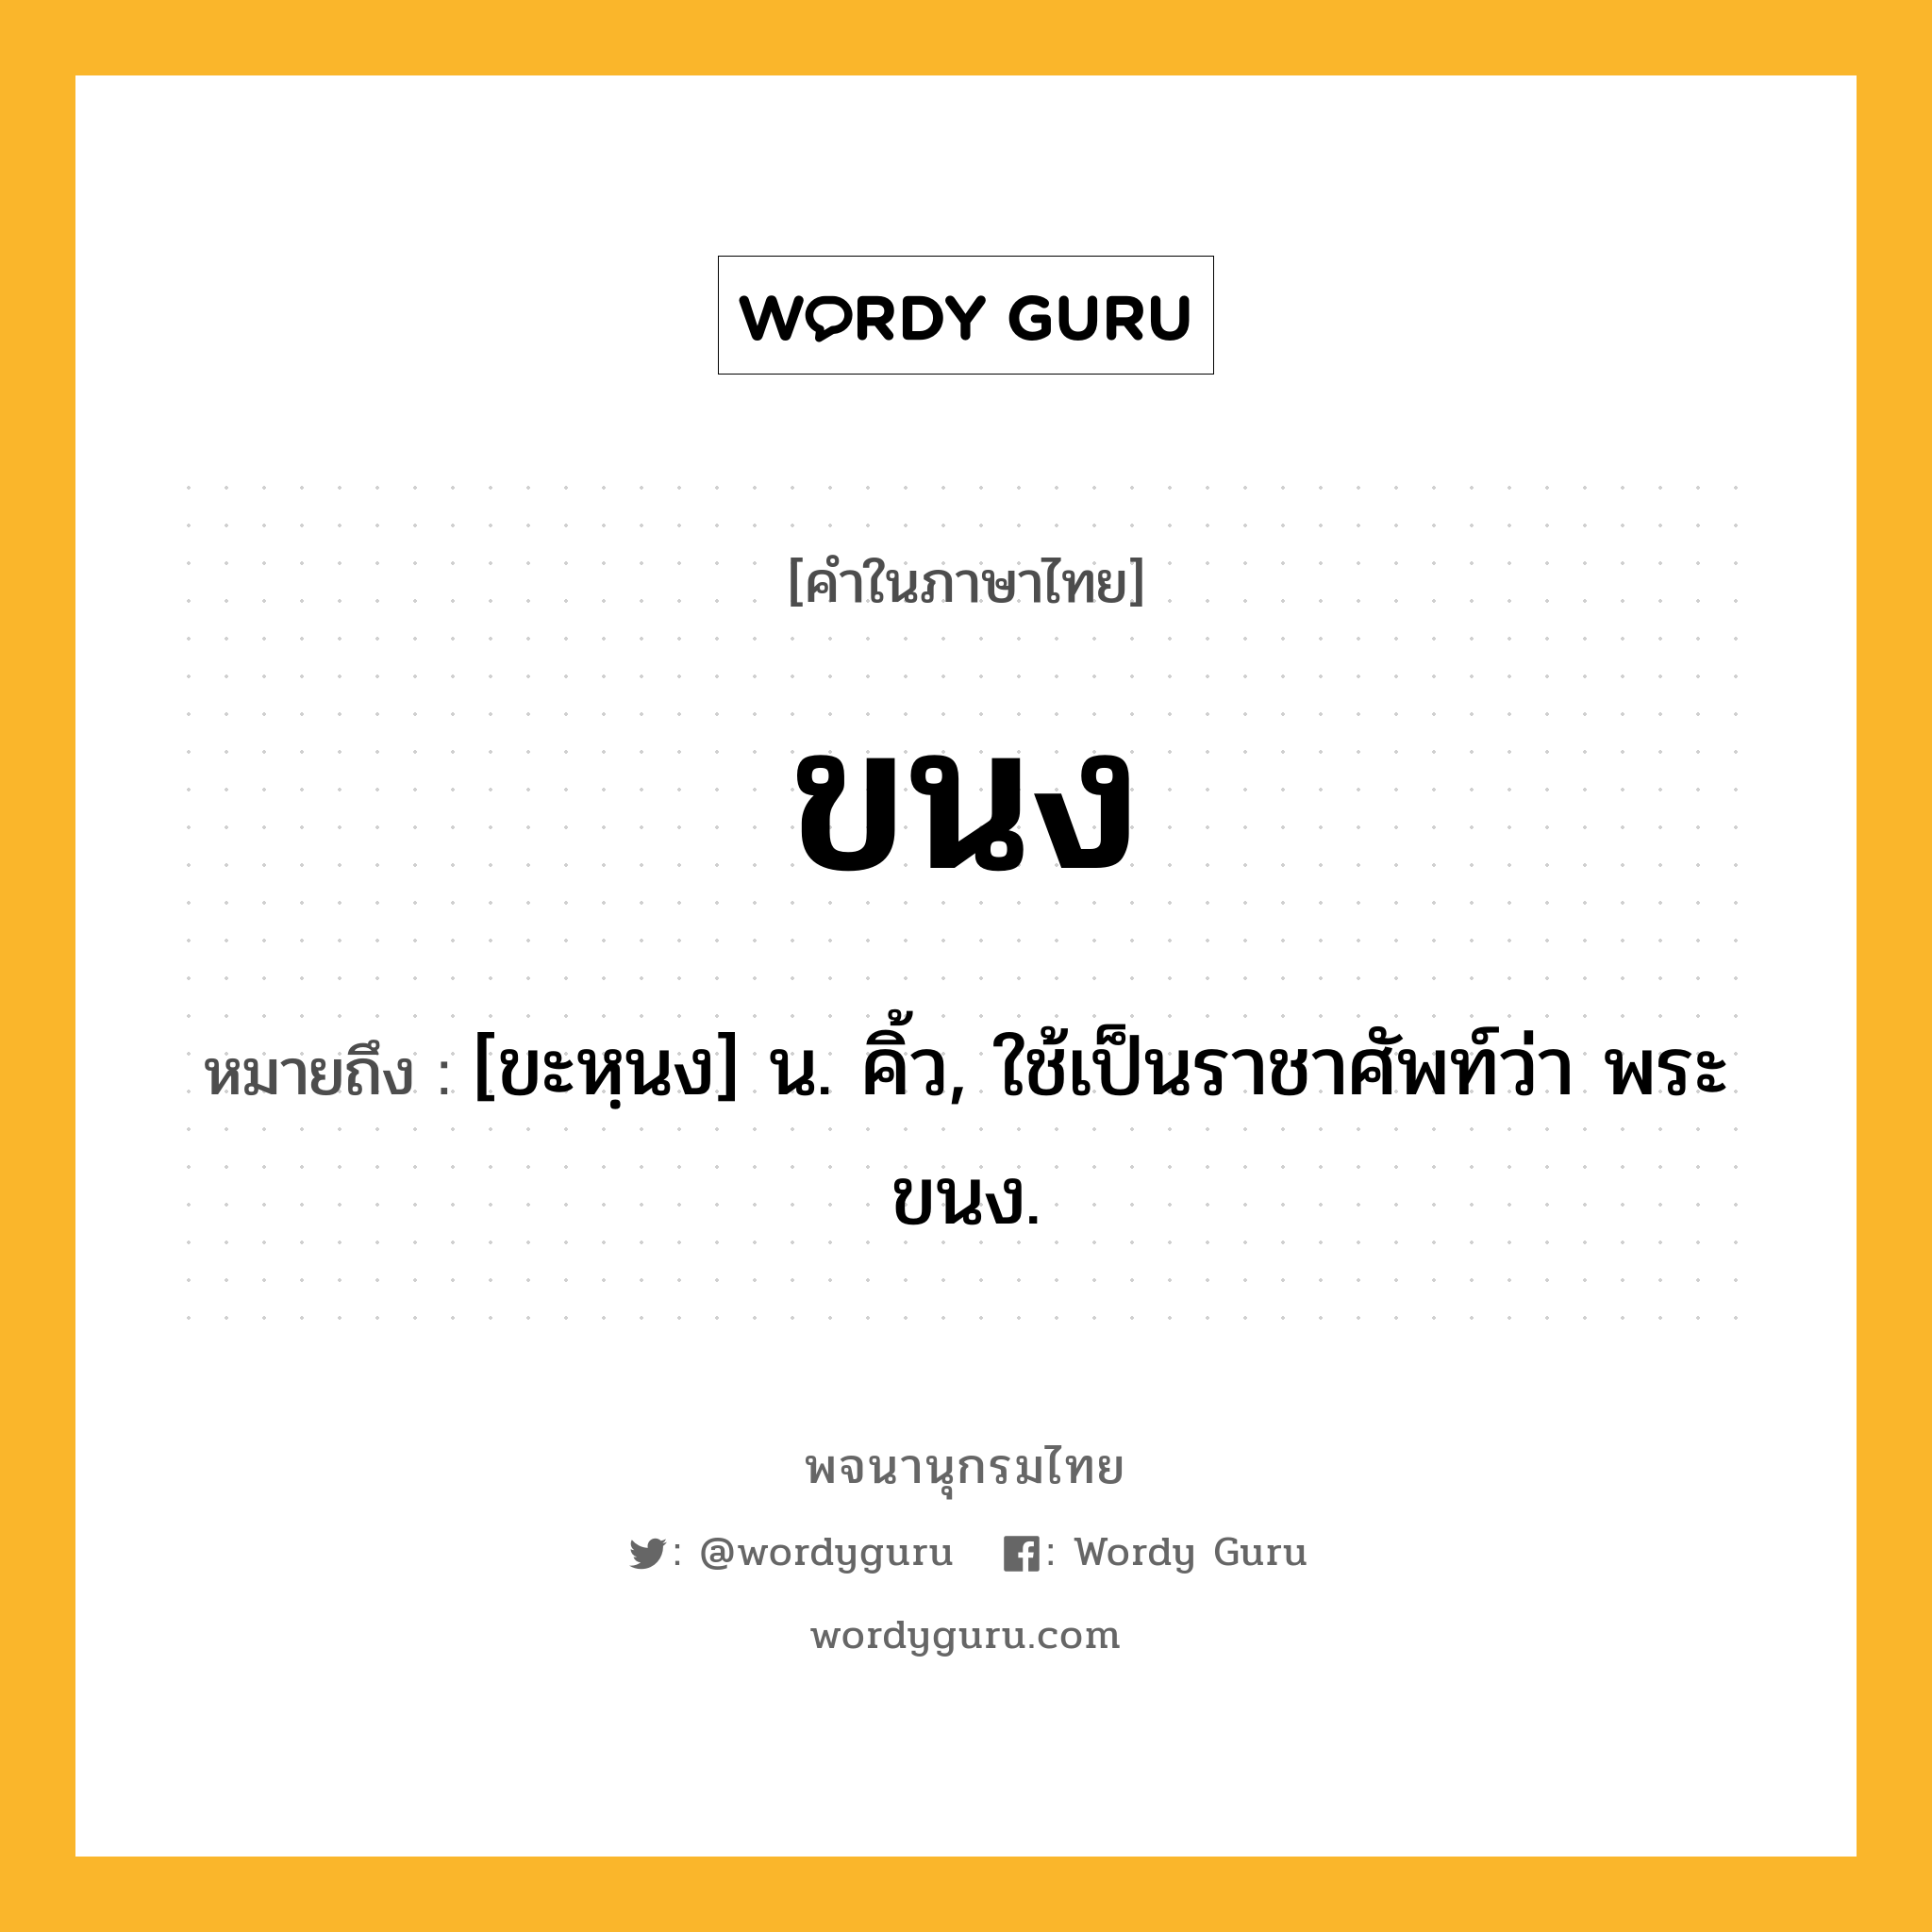 ขนง ความหมาย หมายถึงอะไร?, คำในภาษาไทย ขนง หมายถึง [ขะหฺนง] น. คิ้ว, ใช้เป็นราชาศัพท์ว่า พระขนง.